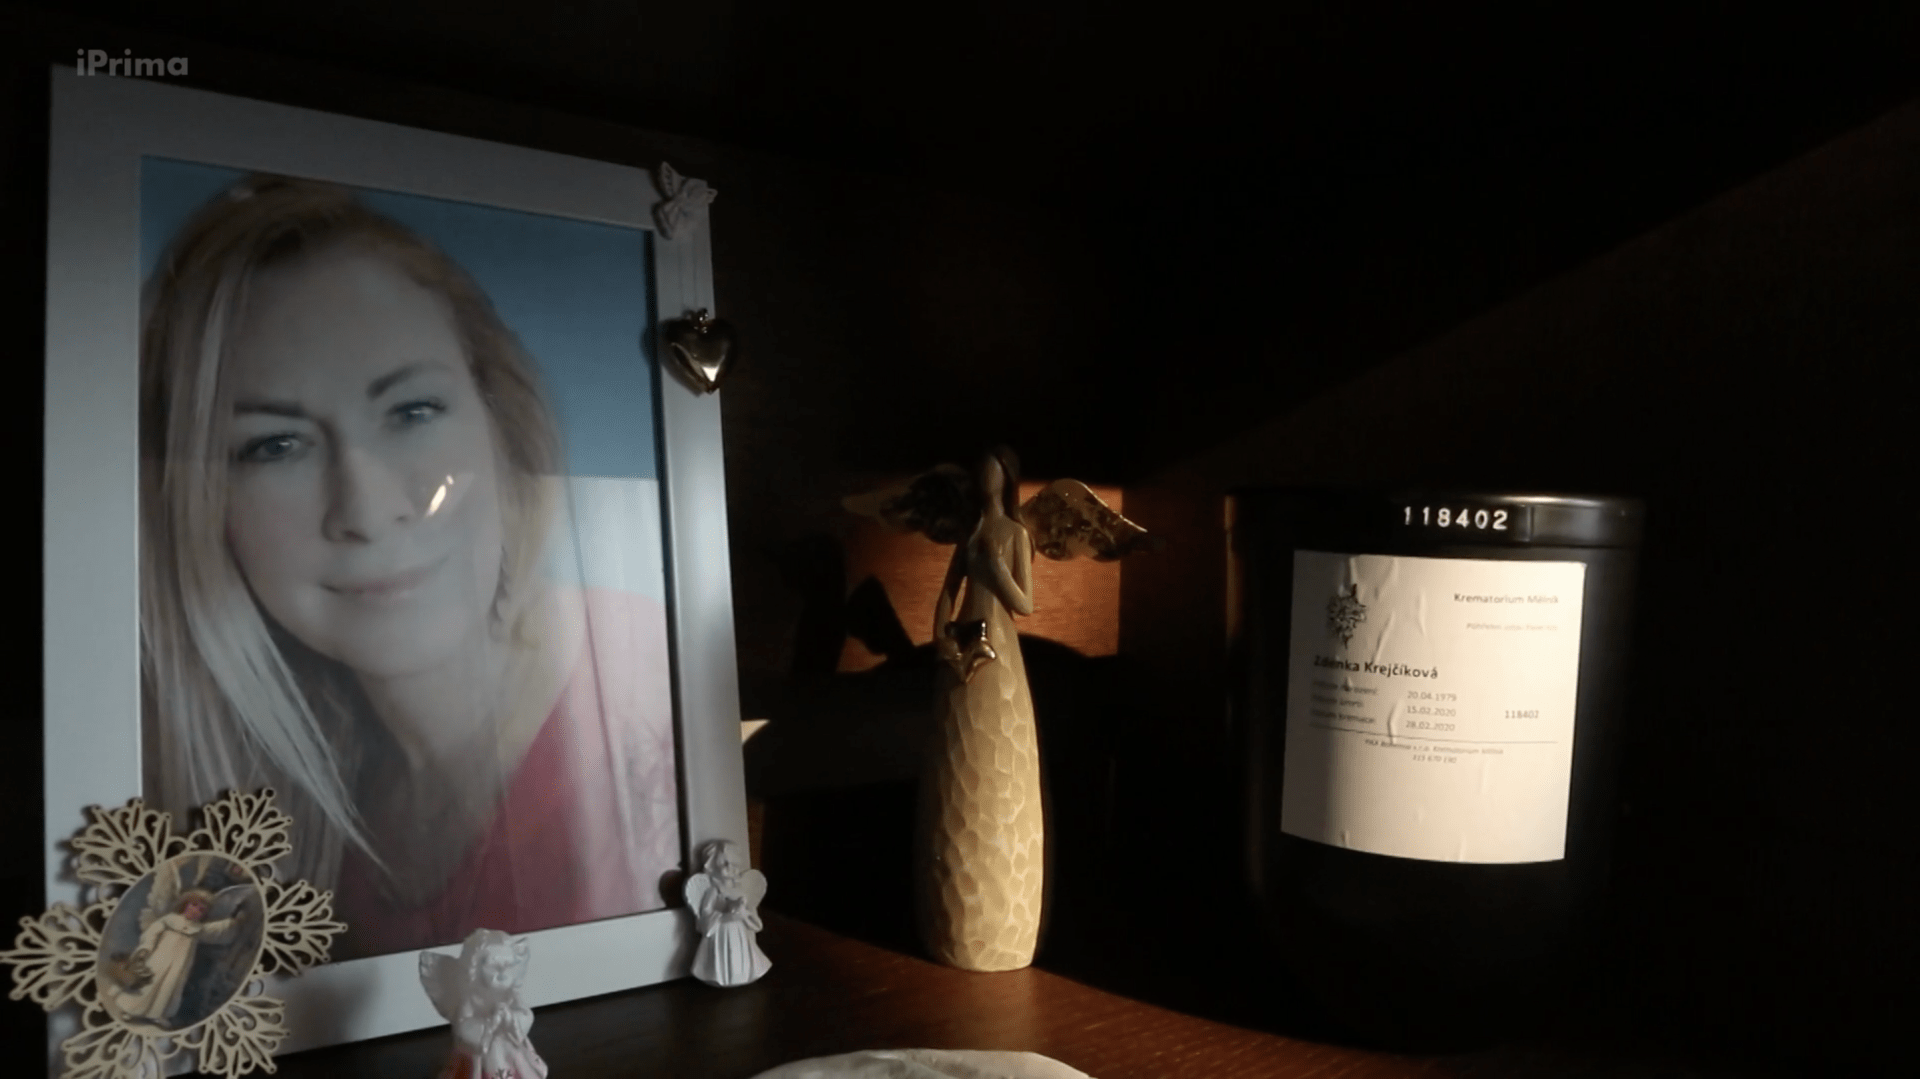 Urnu s popelem dcery a její portrét má Zdeňka vystavené v pokoji